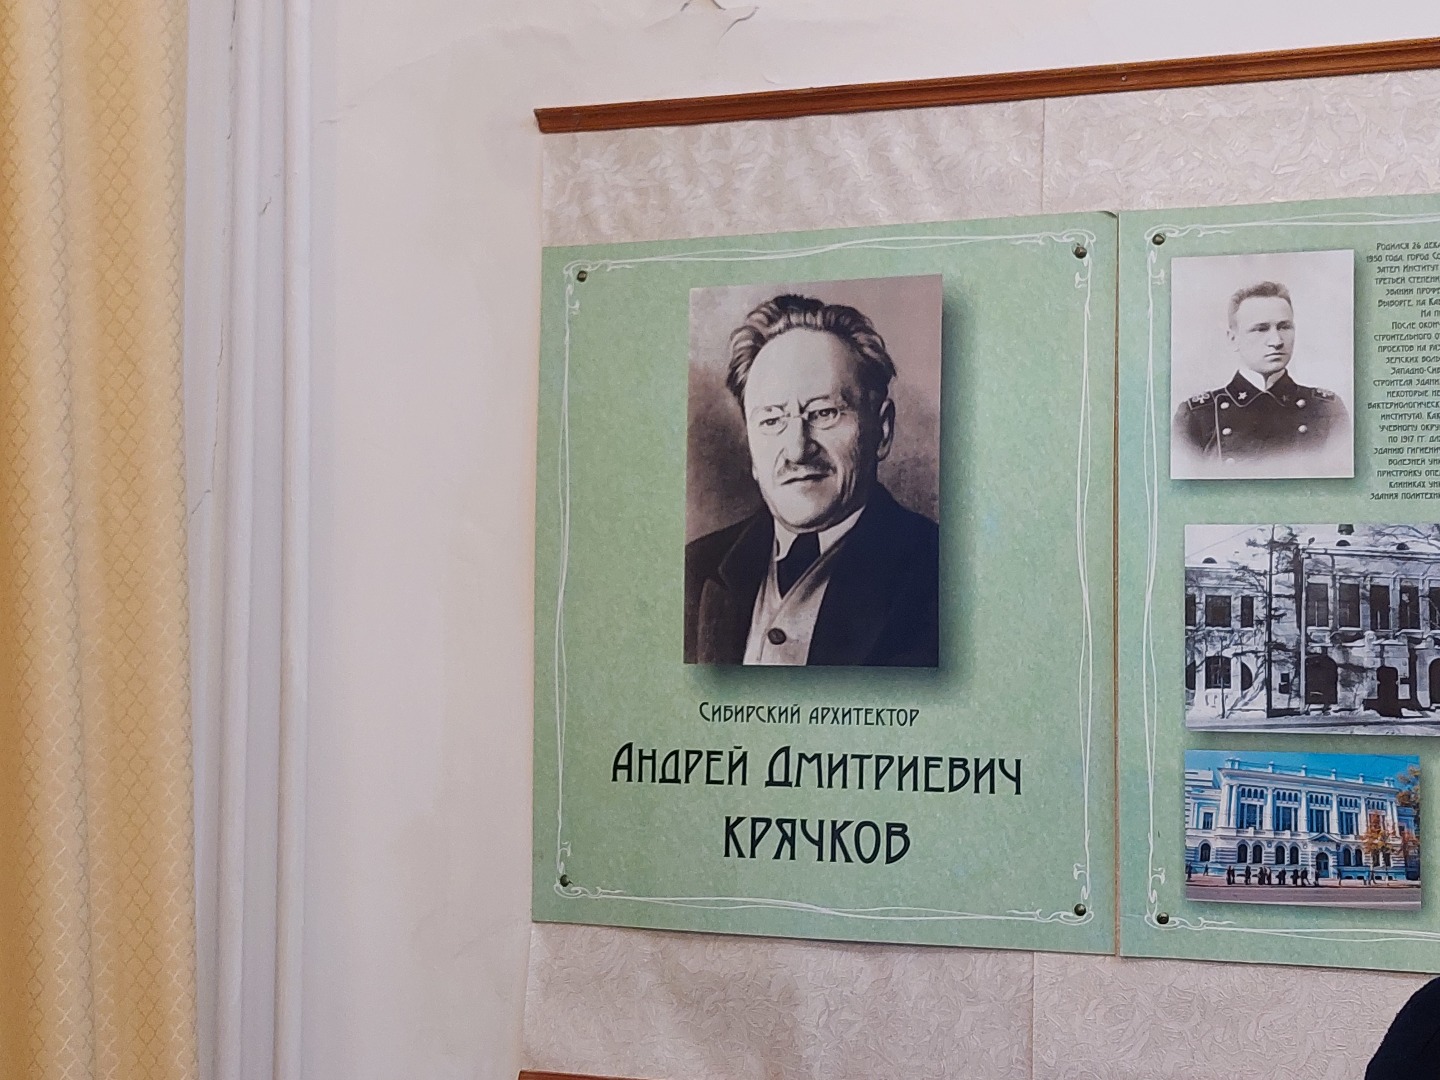 Фото А. Д. Крячкова в Музее деревянного зодчества, Томск